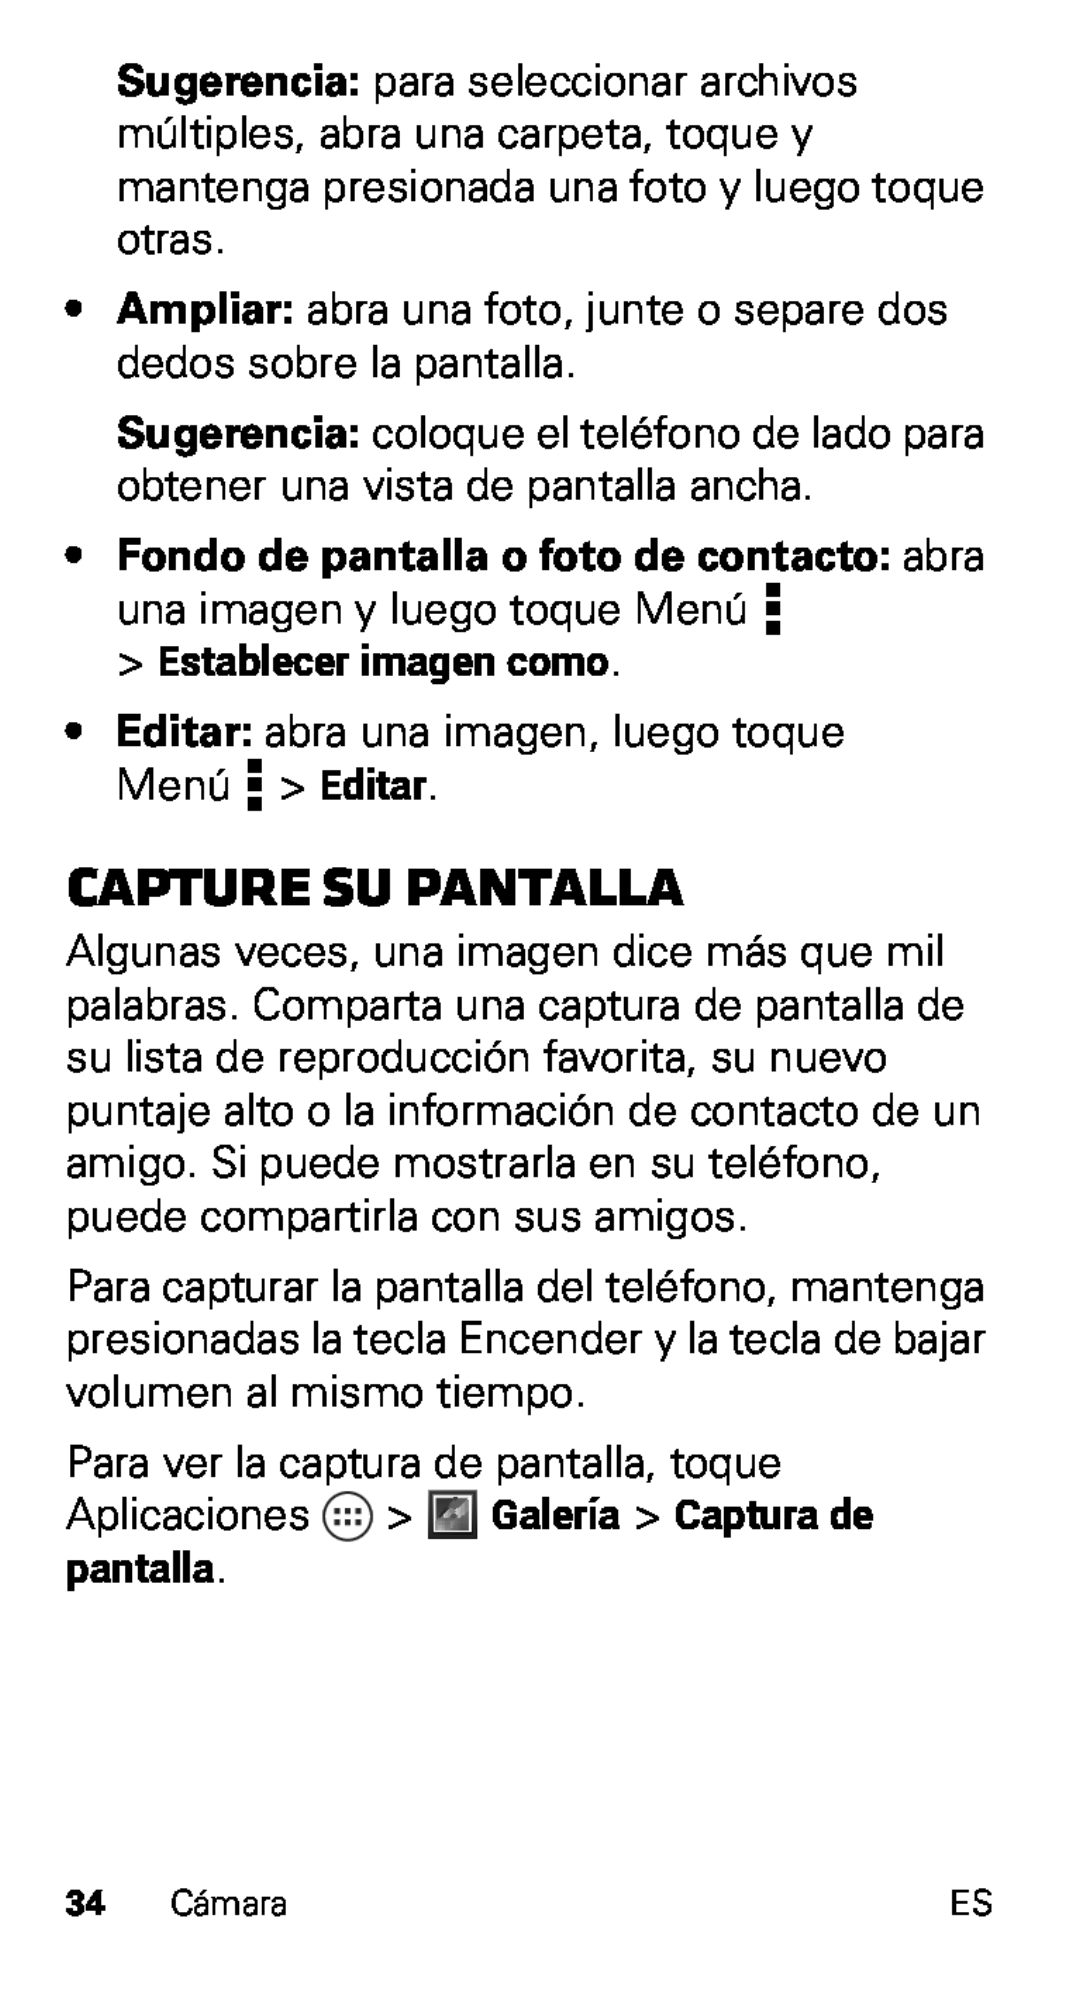 Motorola XT915, D1 manual Capture su pantalla, Fondo de pantalla o foto de contacto abra 